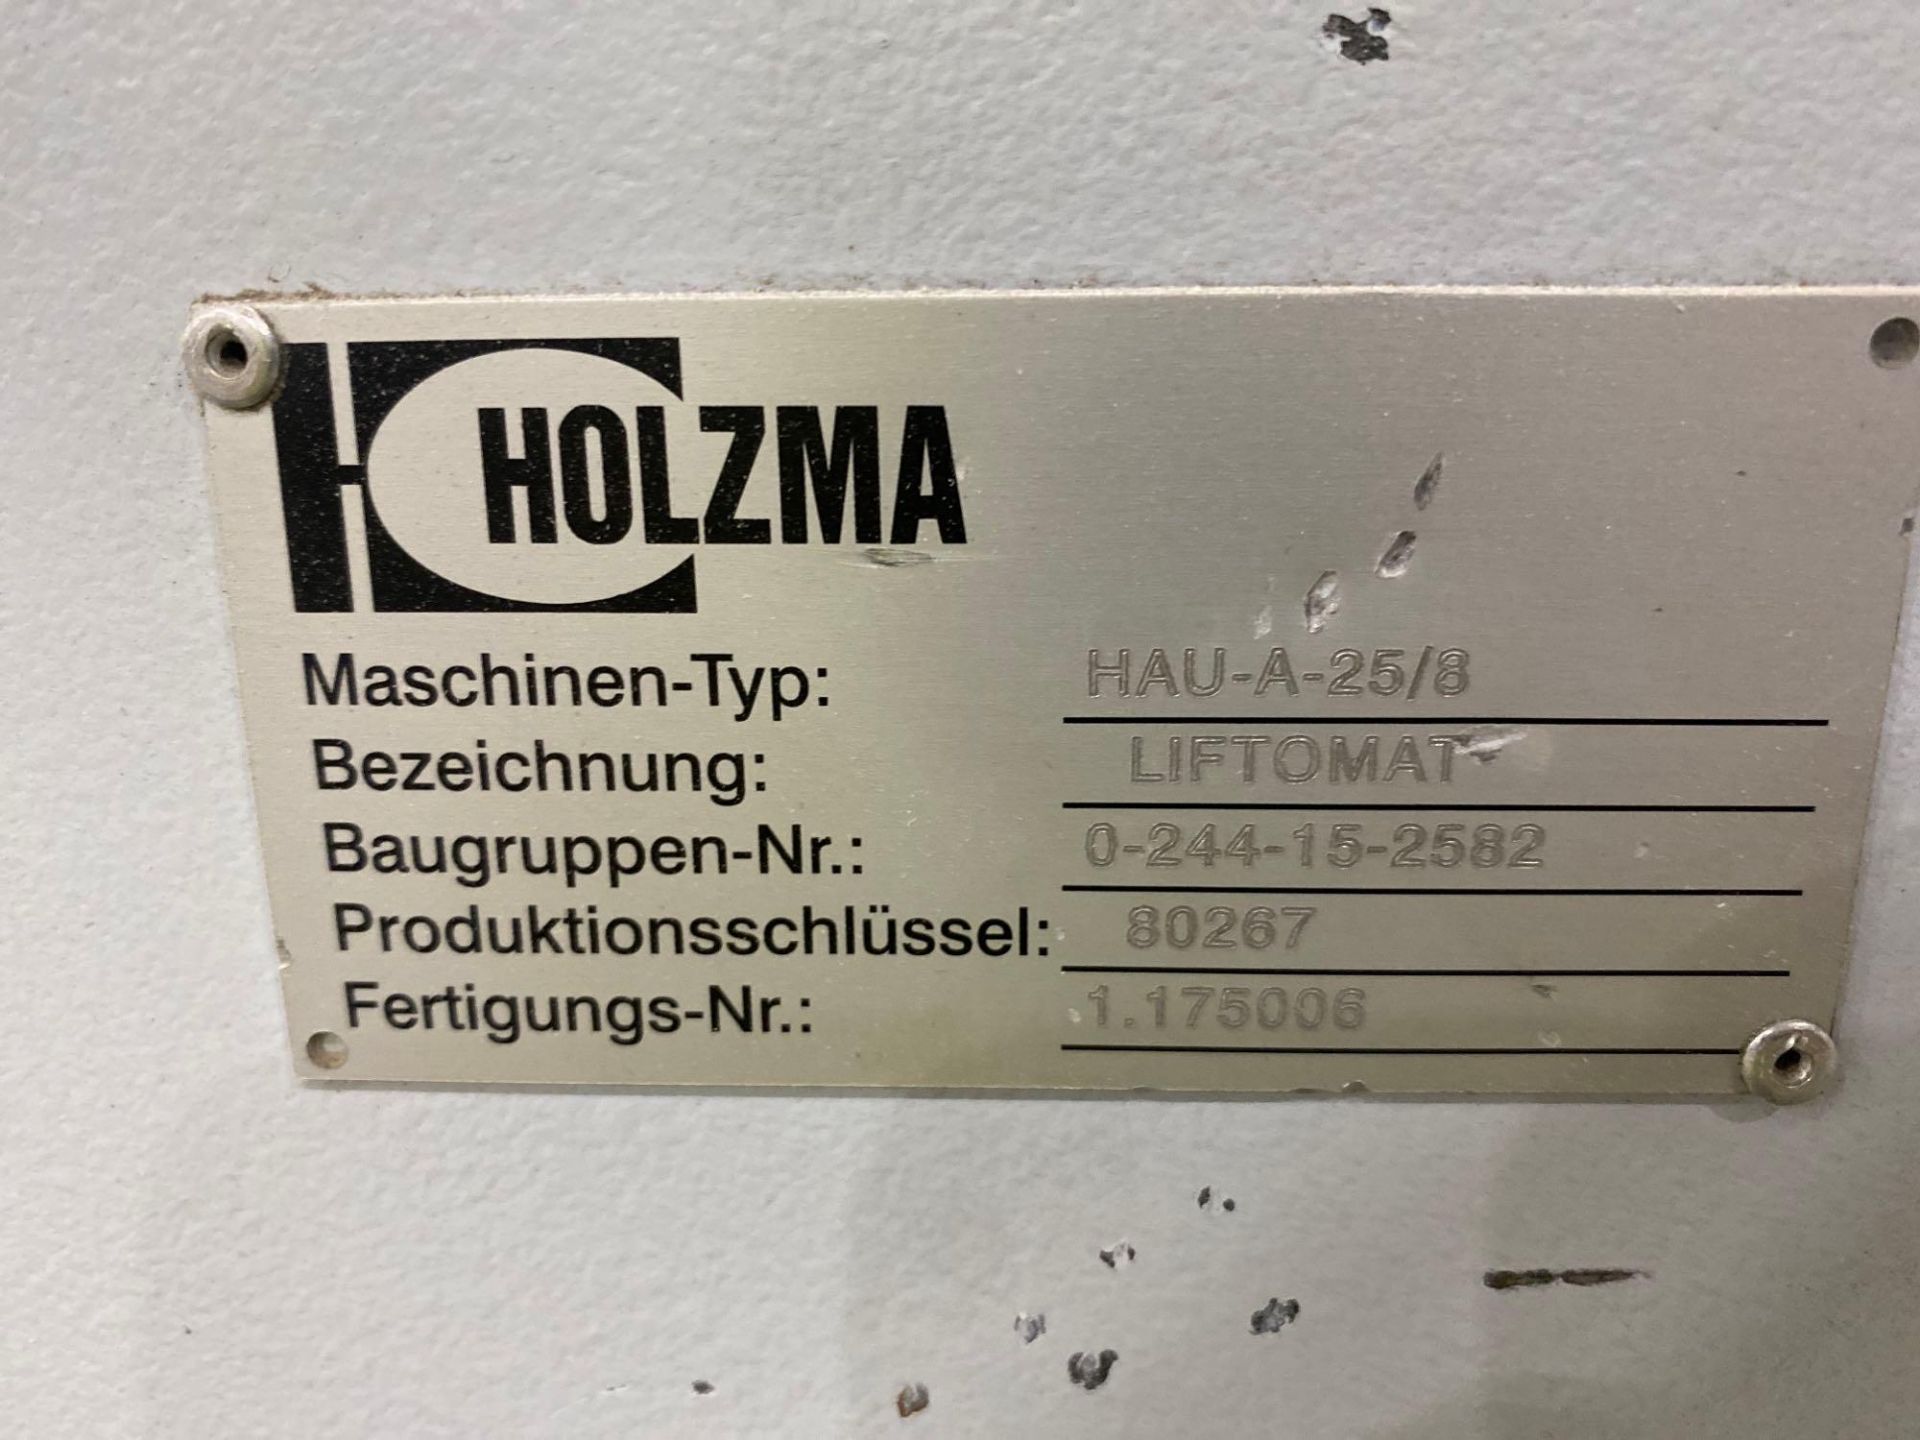 Lot Holzma liftomat HAU-A-25/8 - Image 2 of 14